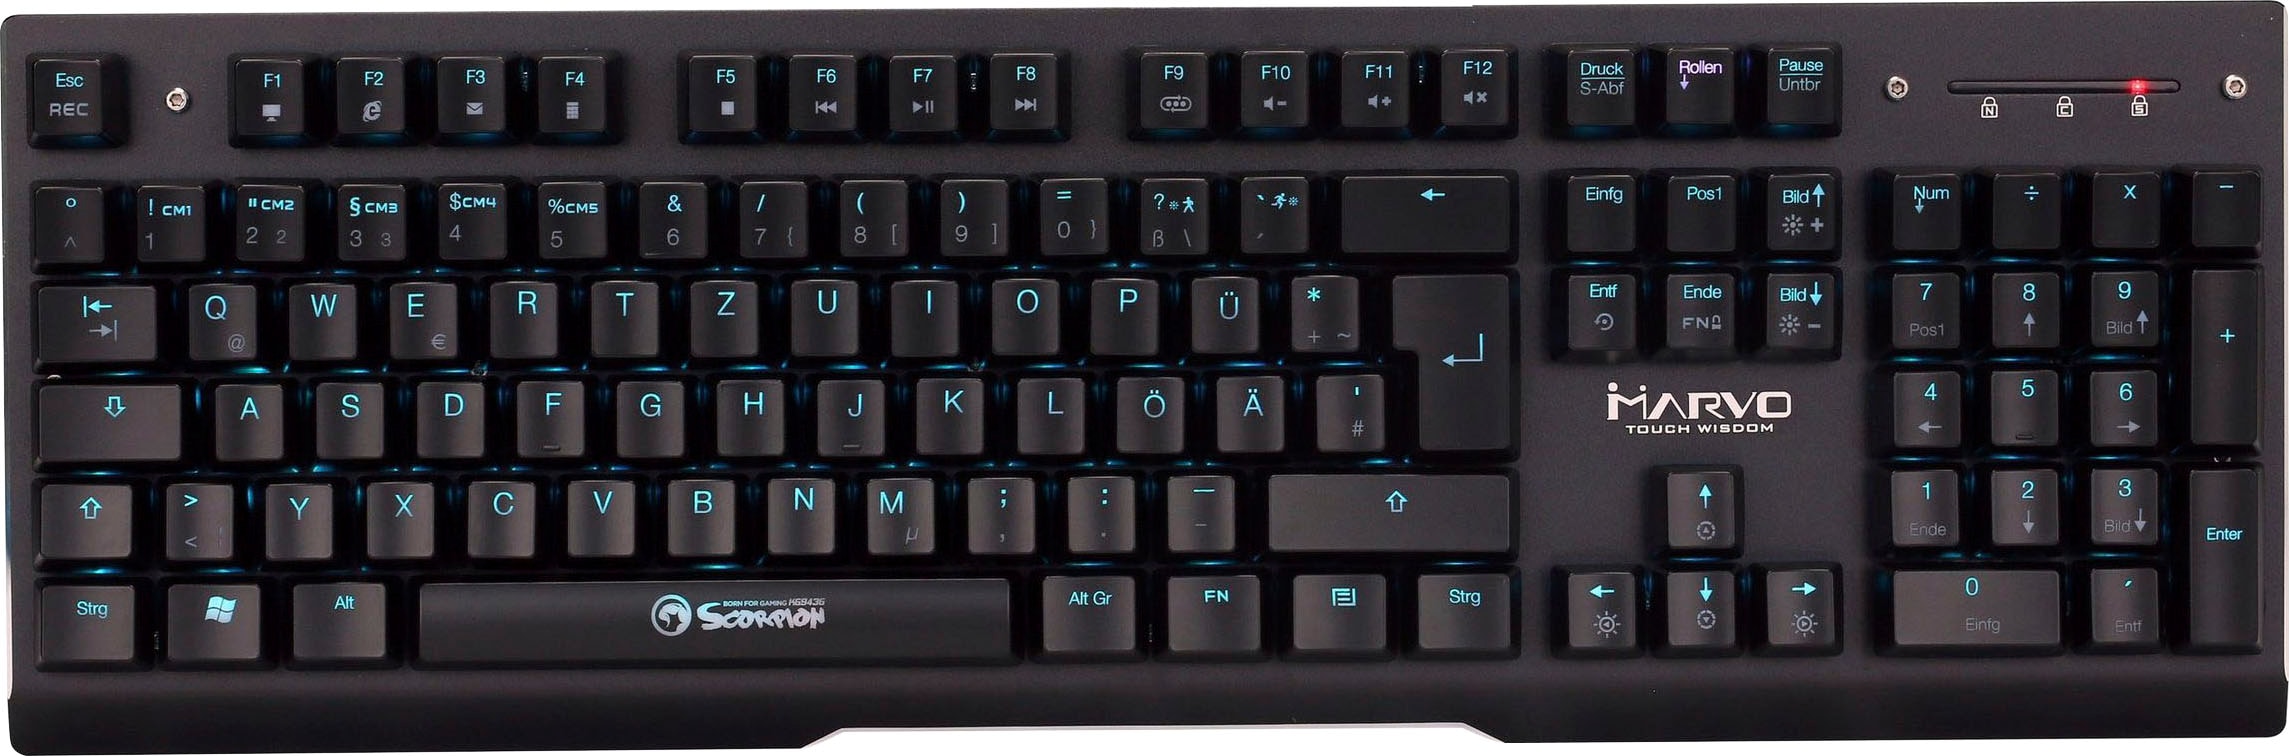 Gaming-Tastatur online OTTO KG943G« jetzt MARVO »Scorpion bei